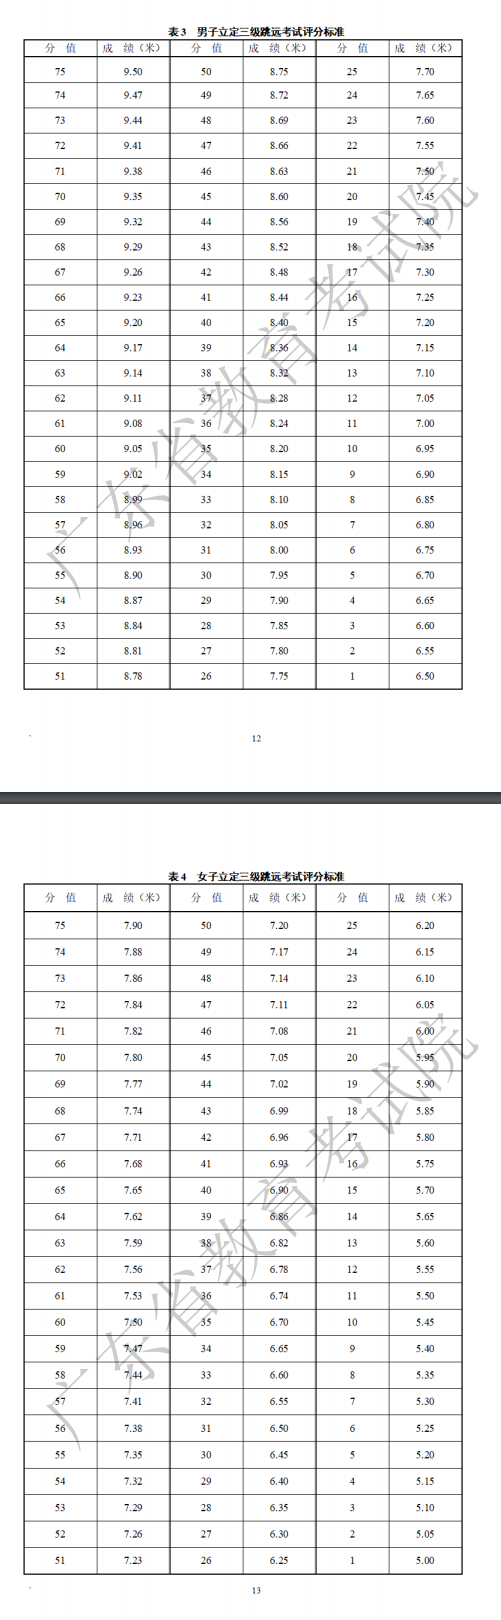 2023年广东体育类专业统考考试项目及评分标准